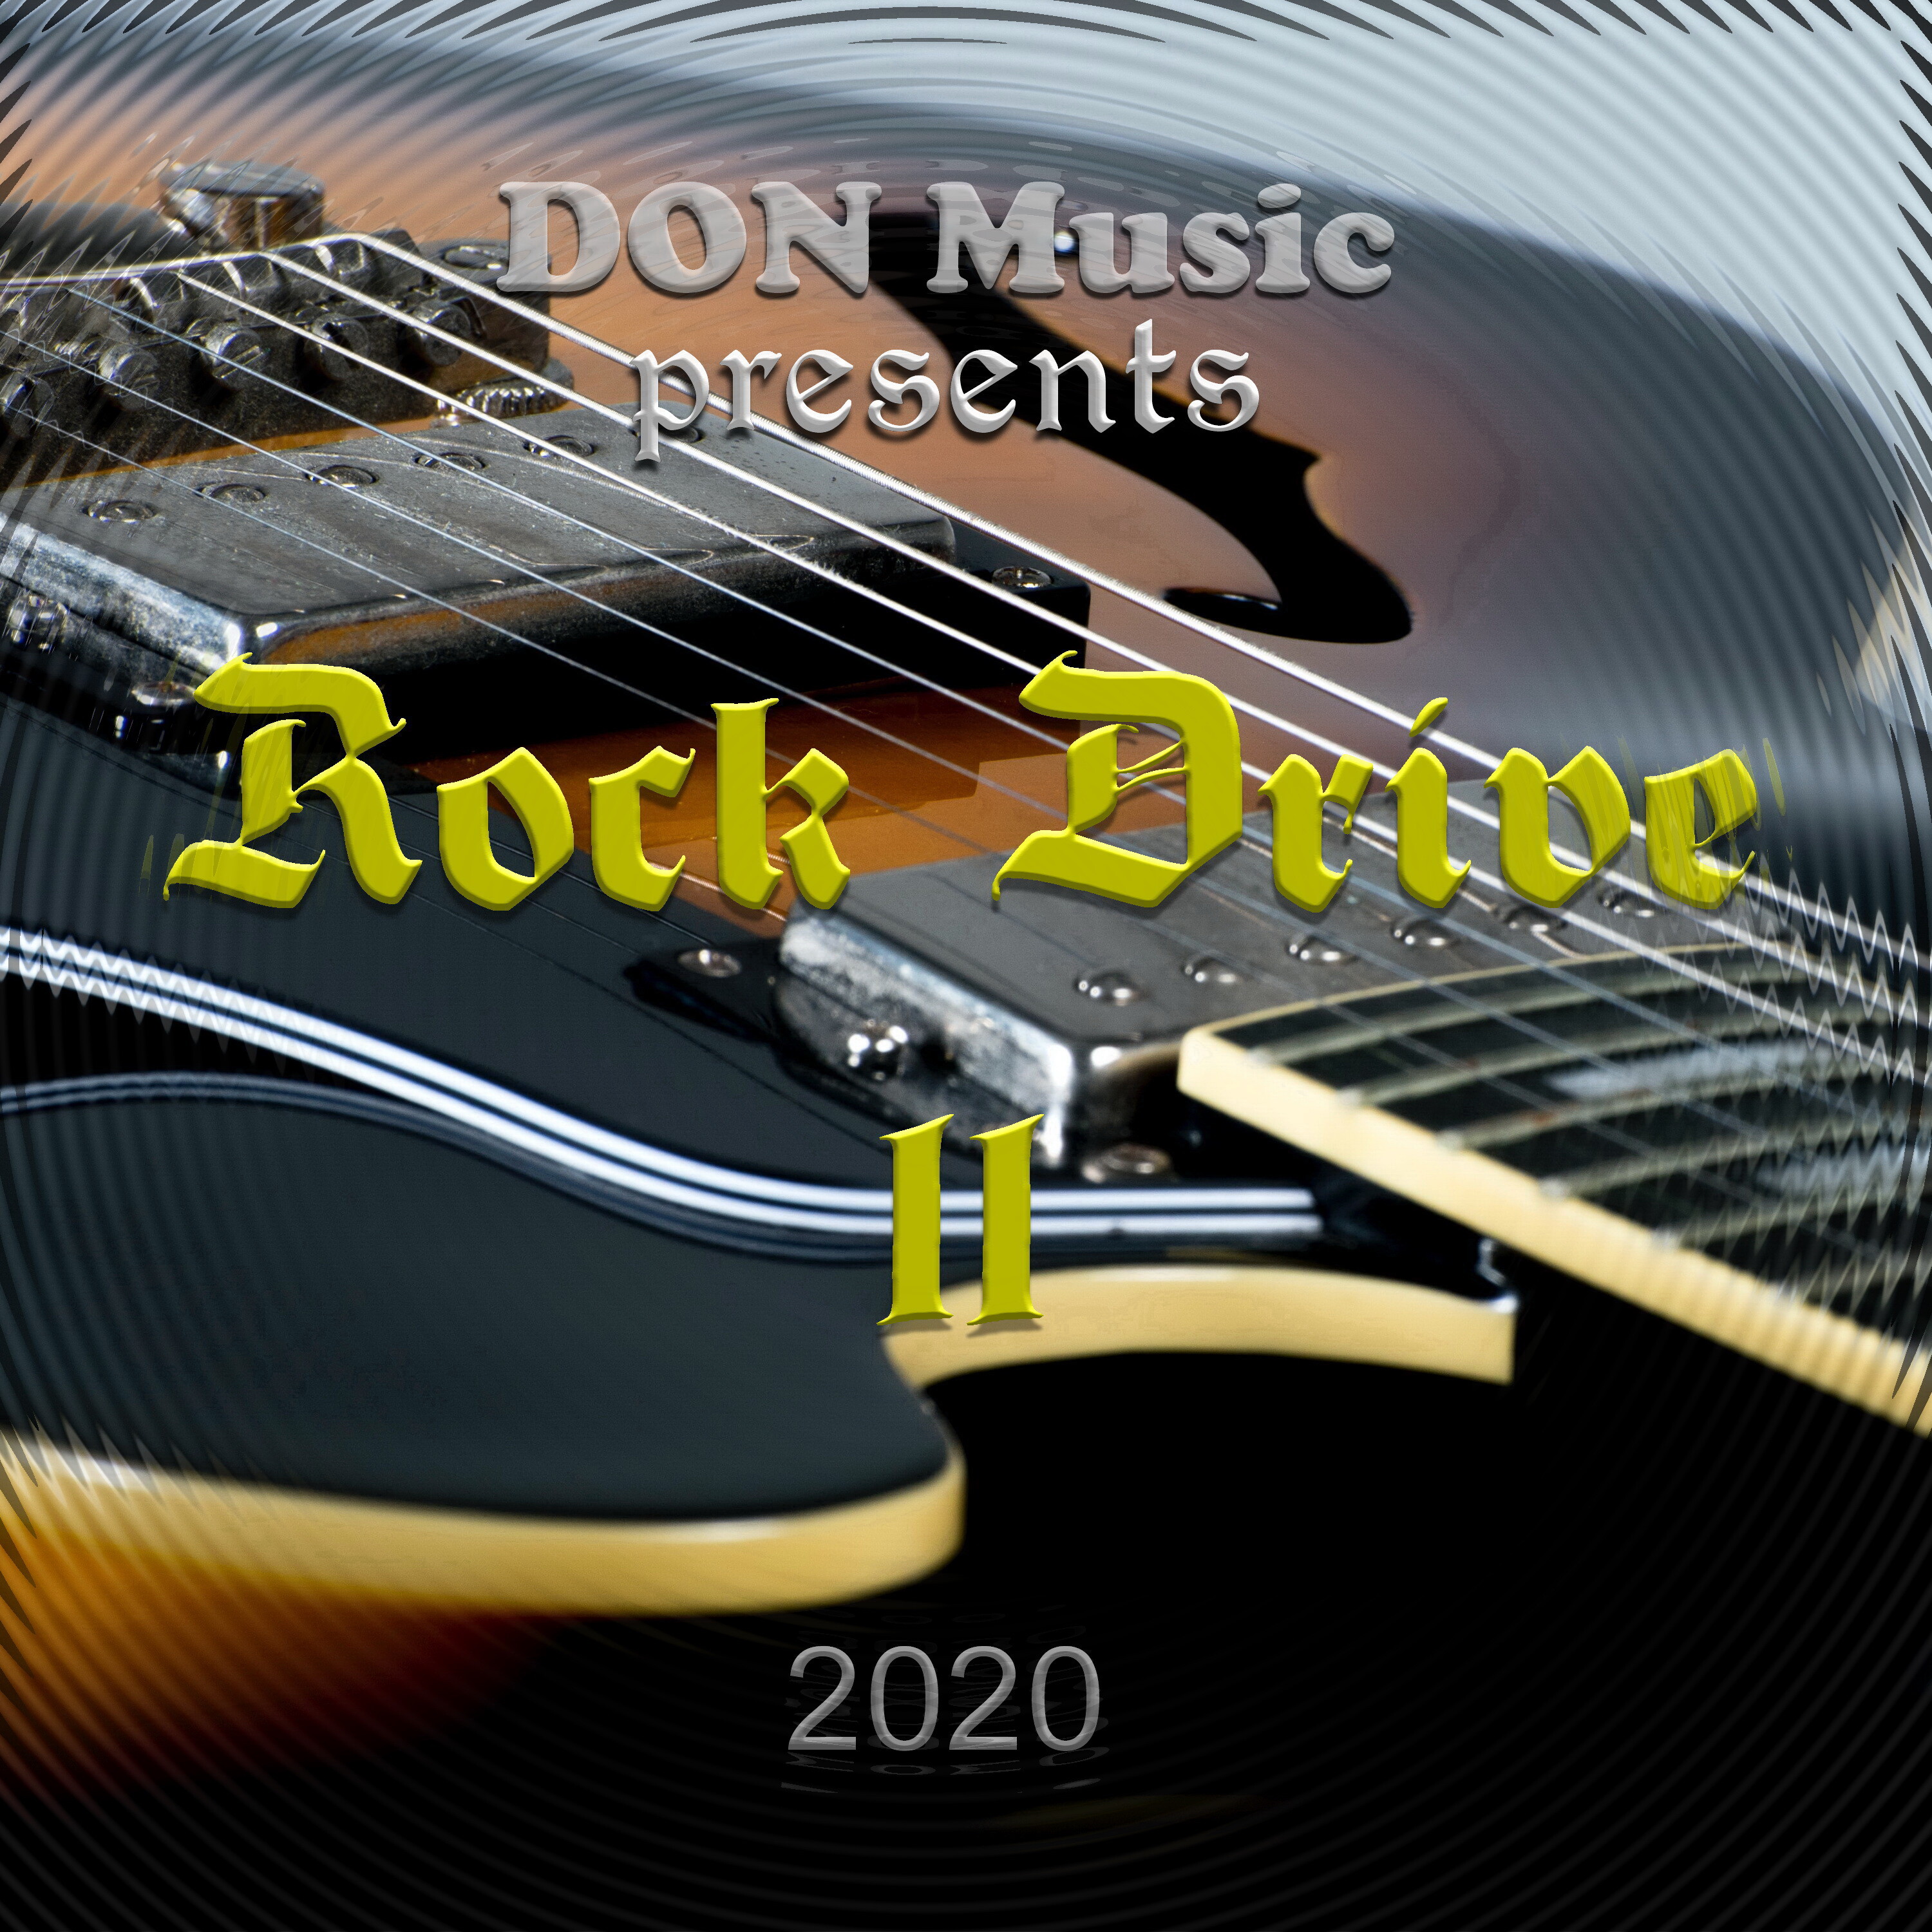 Музыка 2010 2020. Сборник песен 2010-2020. Дон Мьюзик. Instrumental Rock популярная мелодия. Blues Rock.